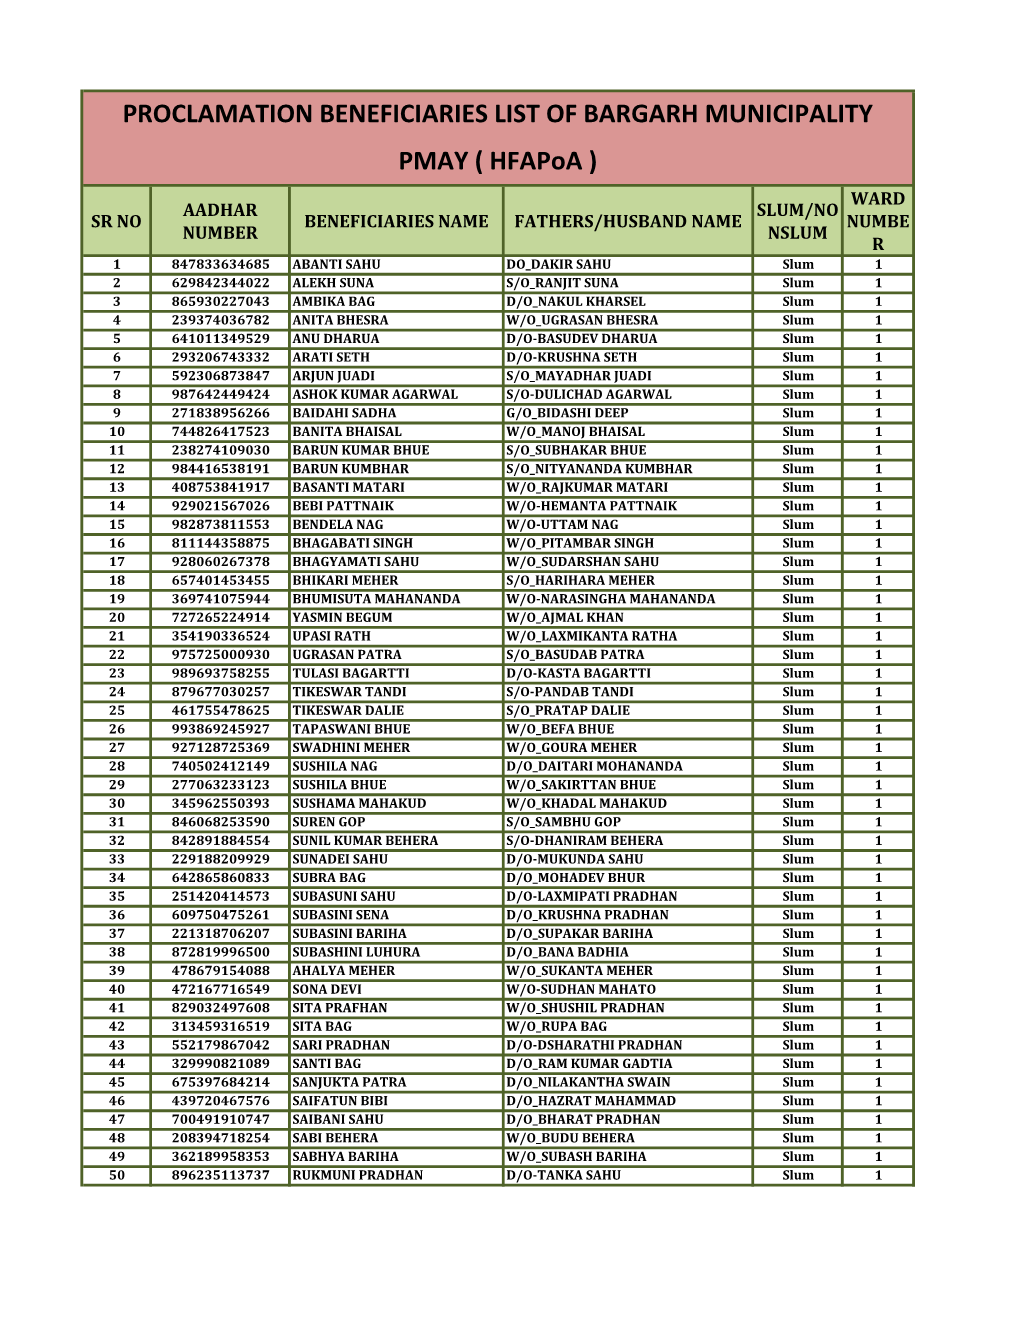 Proclamation Beneficiaries List of Bargarh Municipality